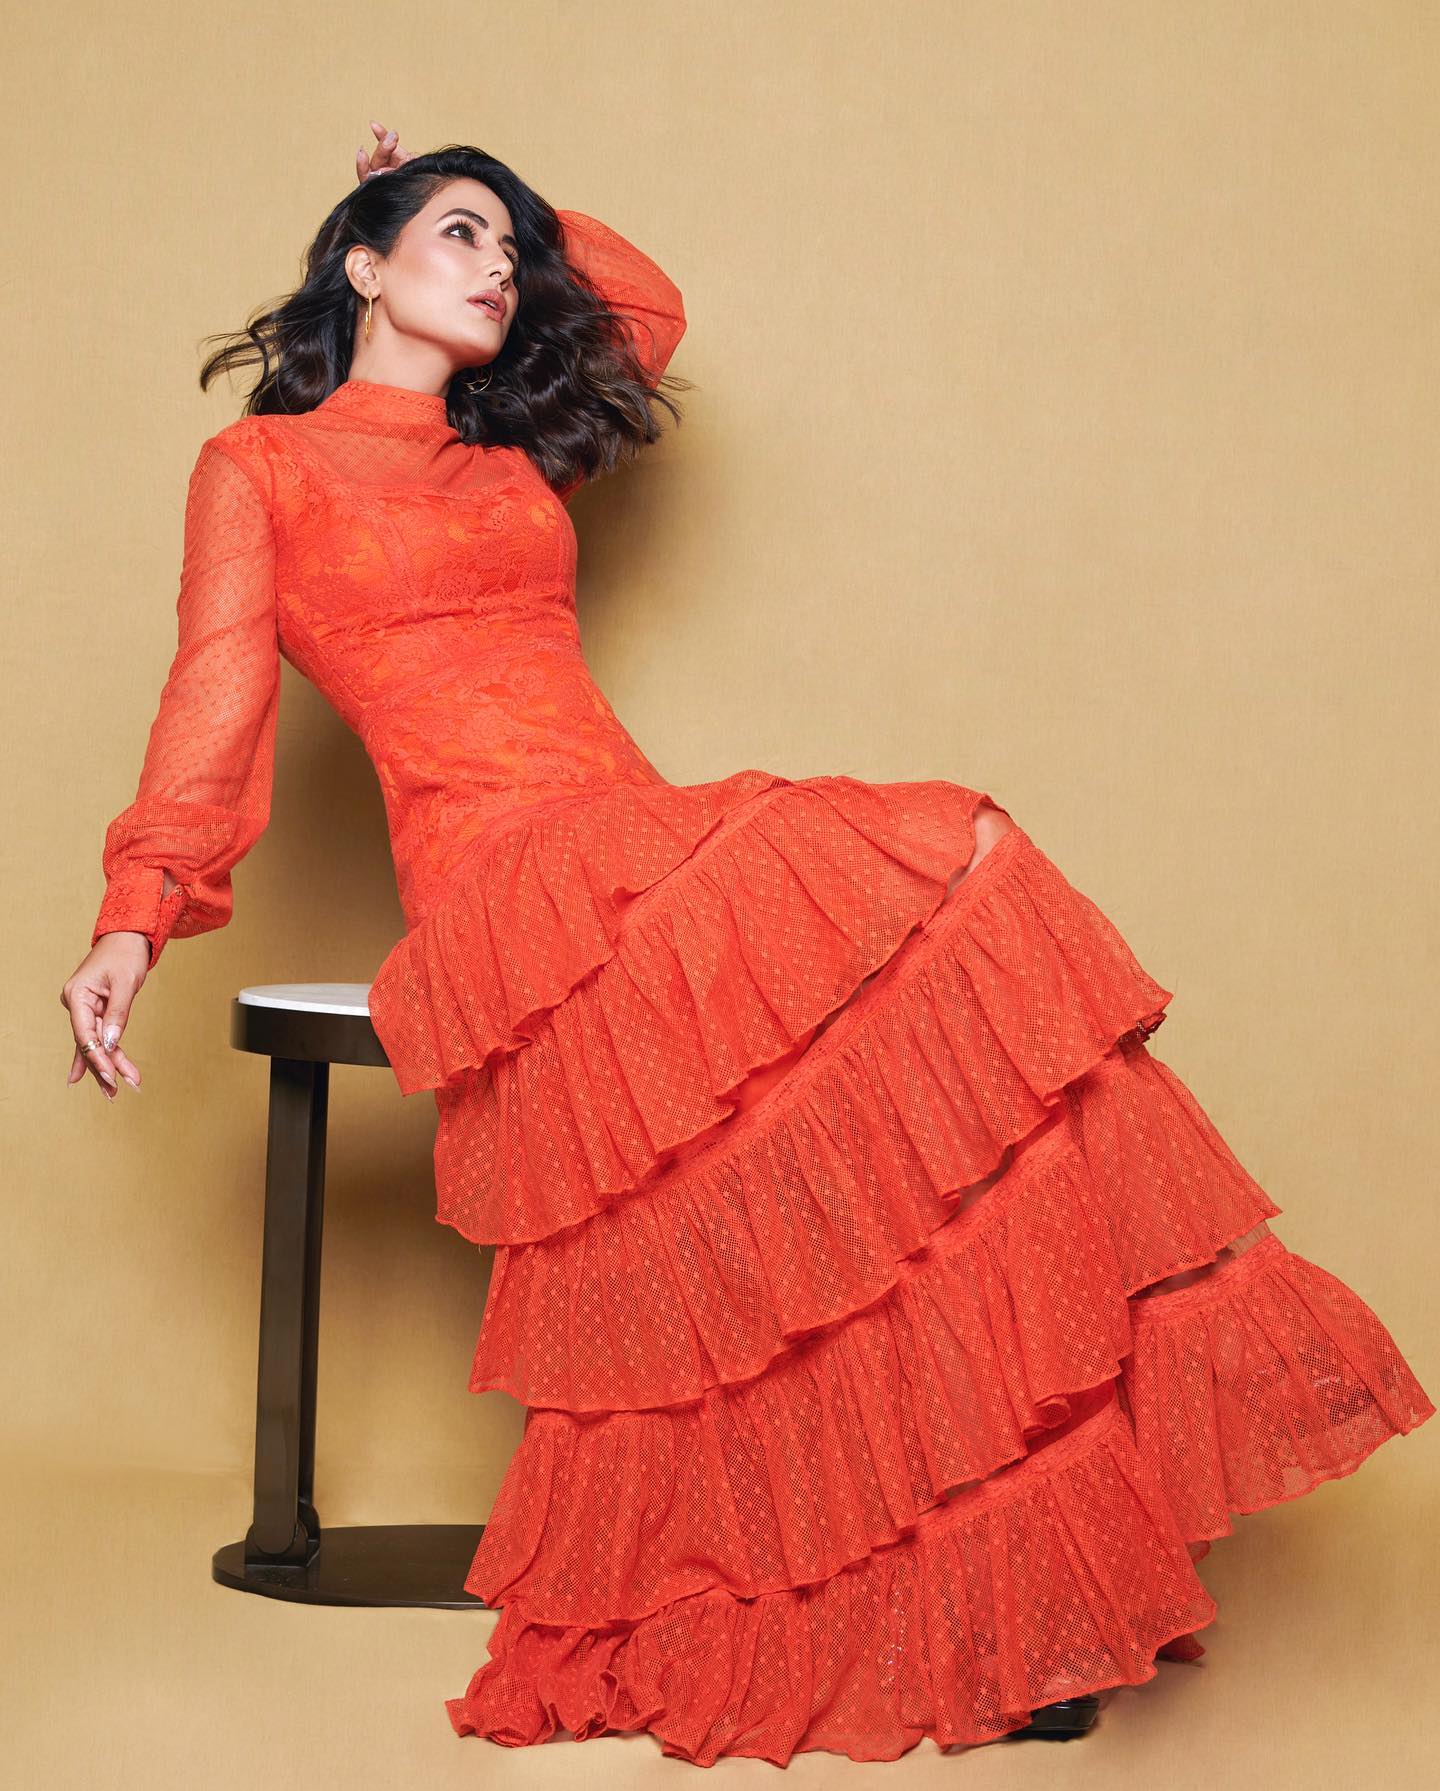 Hina Khan stylish orange dress